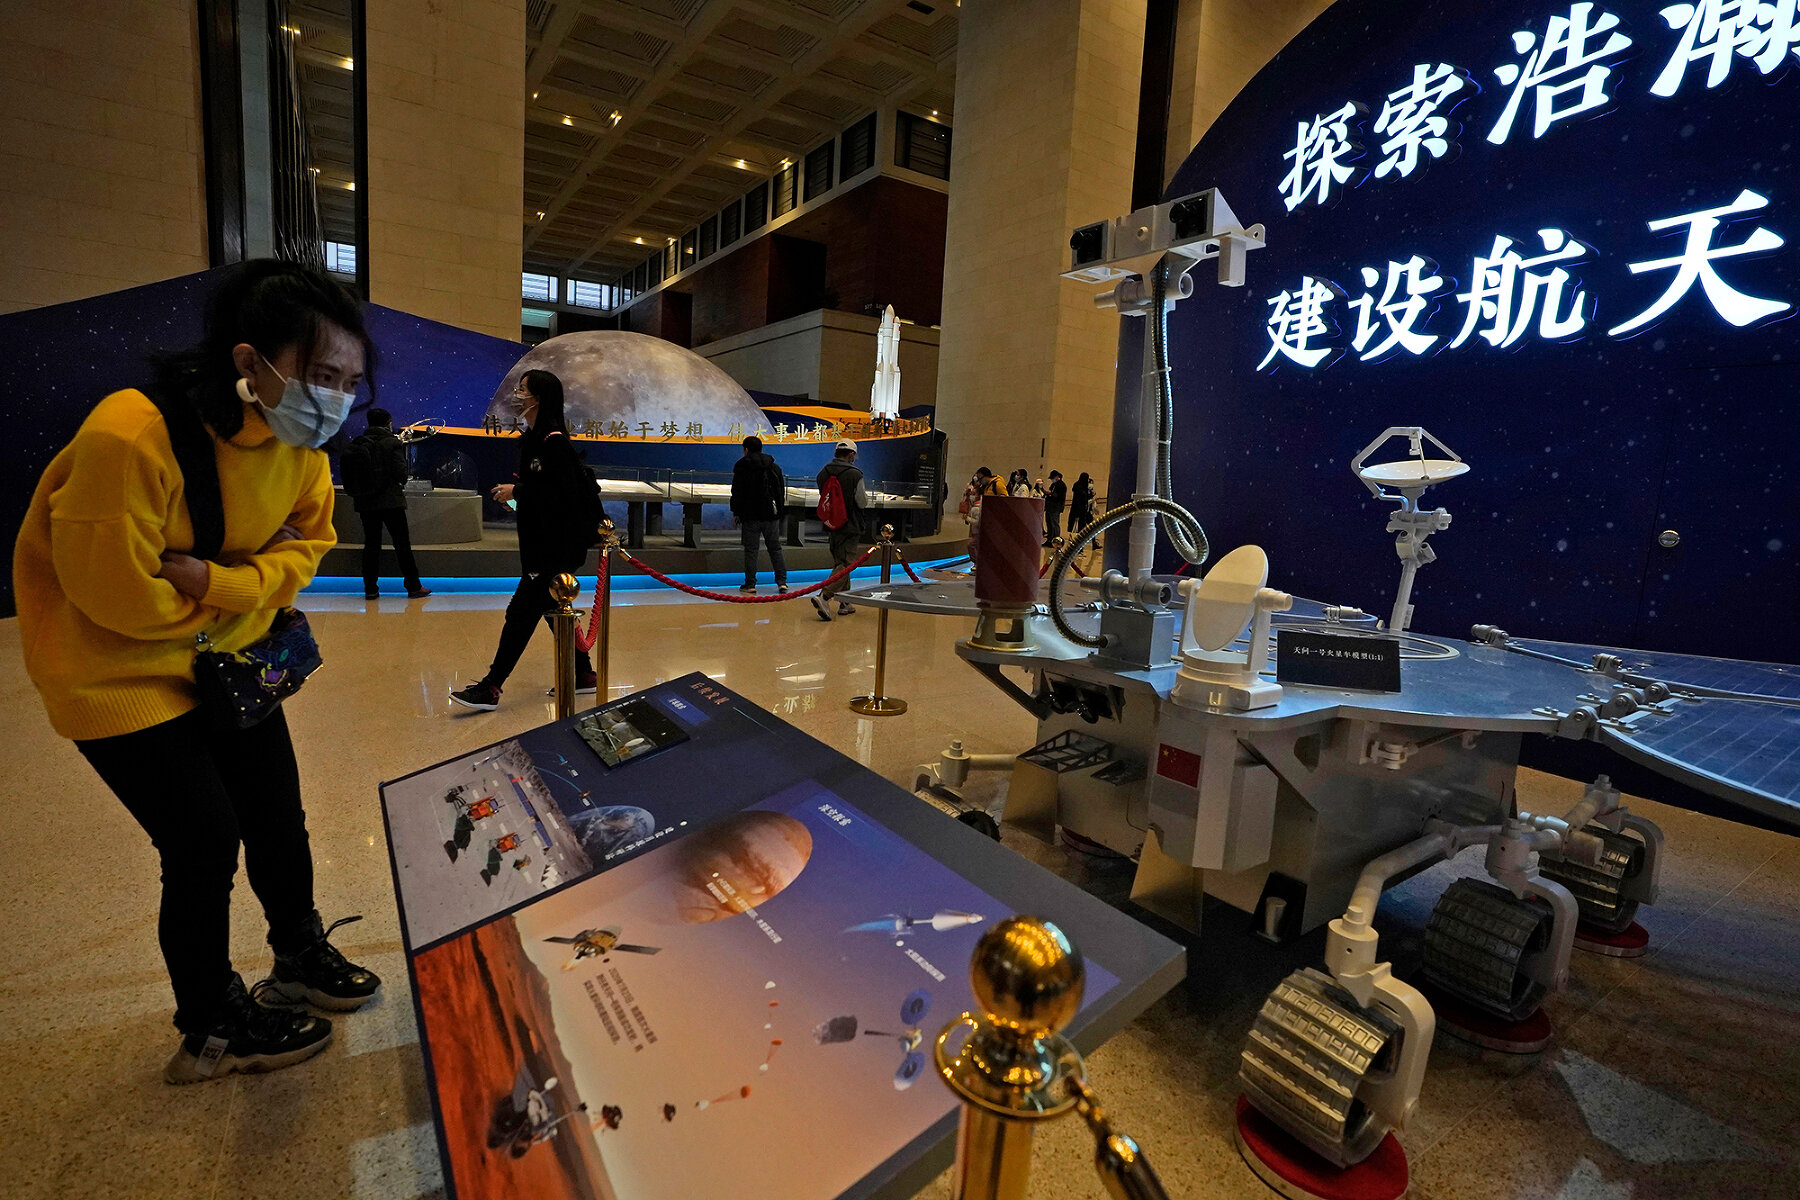 Китай. <p><strong>На фотографии</strong> &mdash; посетительница выставки в Пекине рассматривает макет-реплику китайского ровера &laquo;Тяньвэнь-1&raquo;. Китай, как и США, в данный момент реализует миссию по исследованию Марса. После успешного пуска 22 июля 2020 года миссия достигла орбиты Марса в феврале 2021 года и уже присылает фотографии поверхности планеты,&nbsp;а летом, после выбора места посадки, на Марс опустится автономный марсоход.</p>